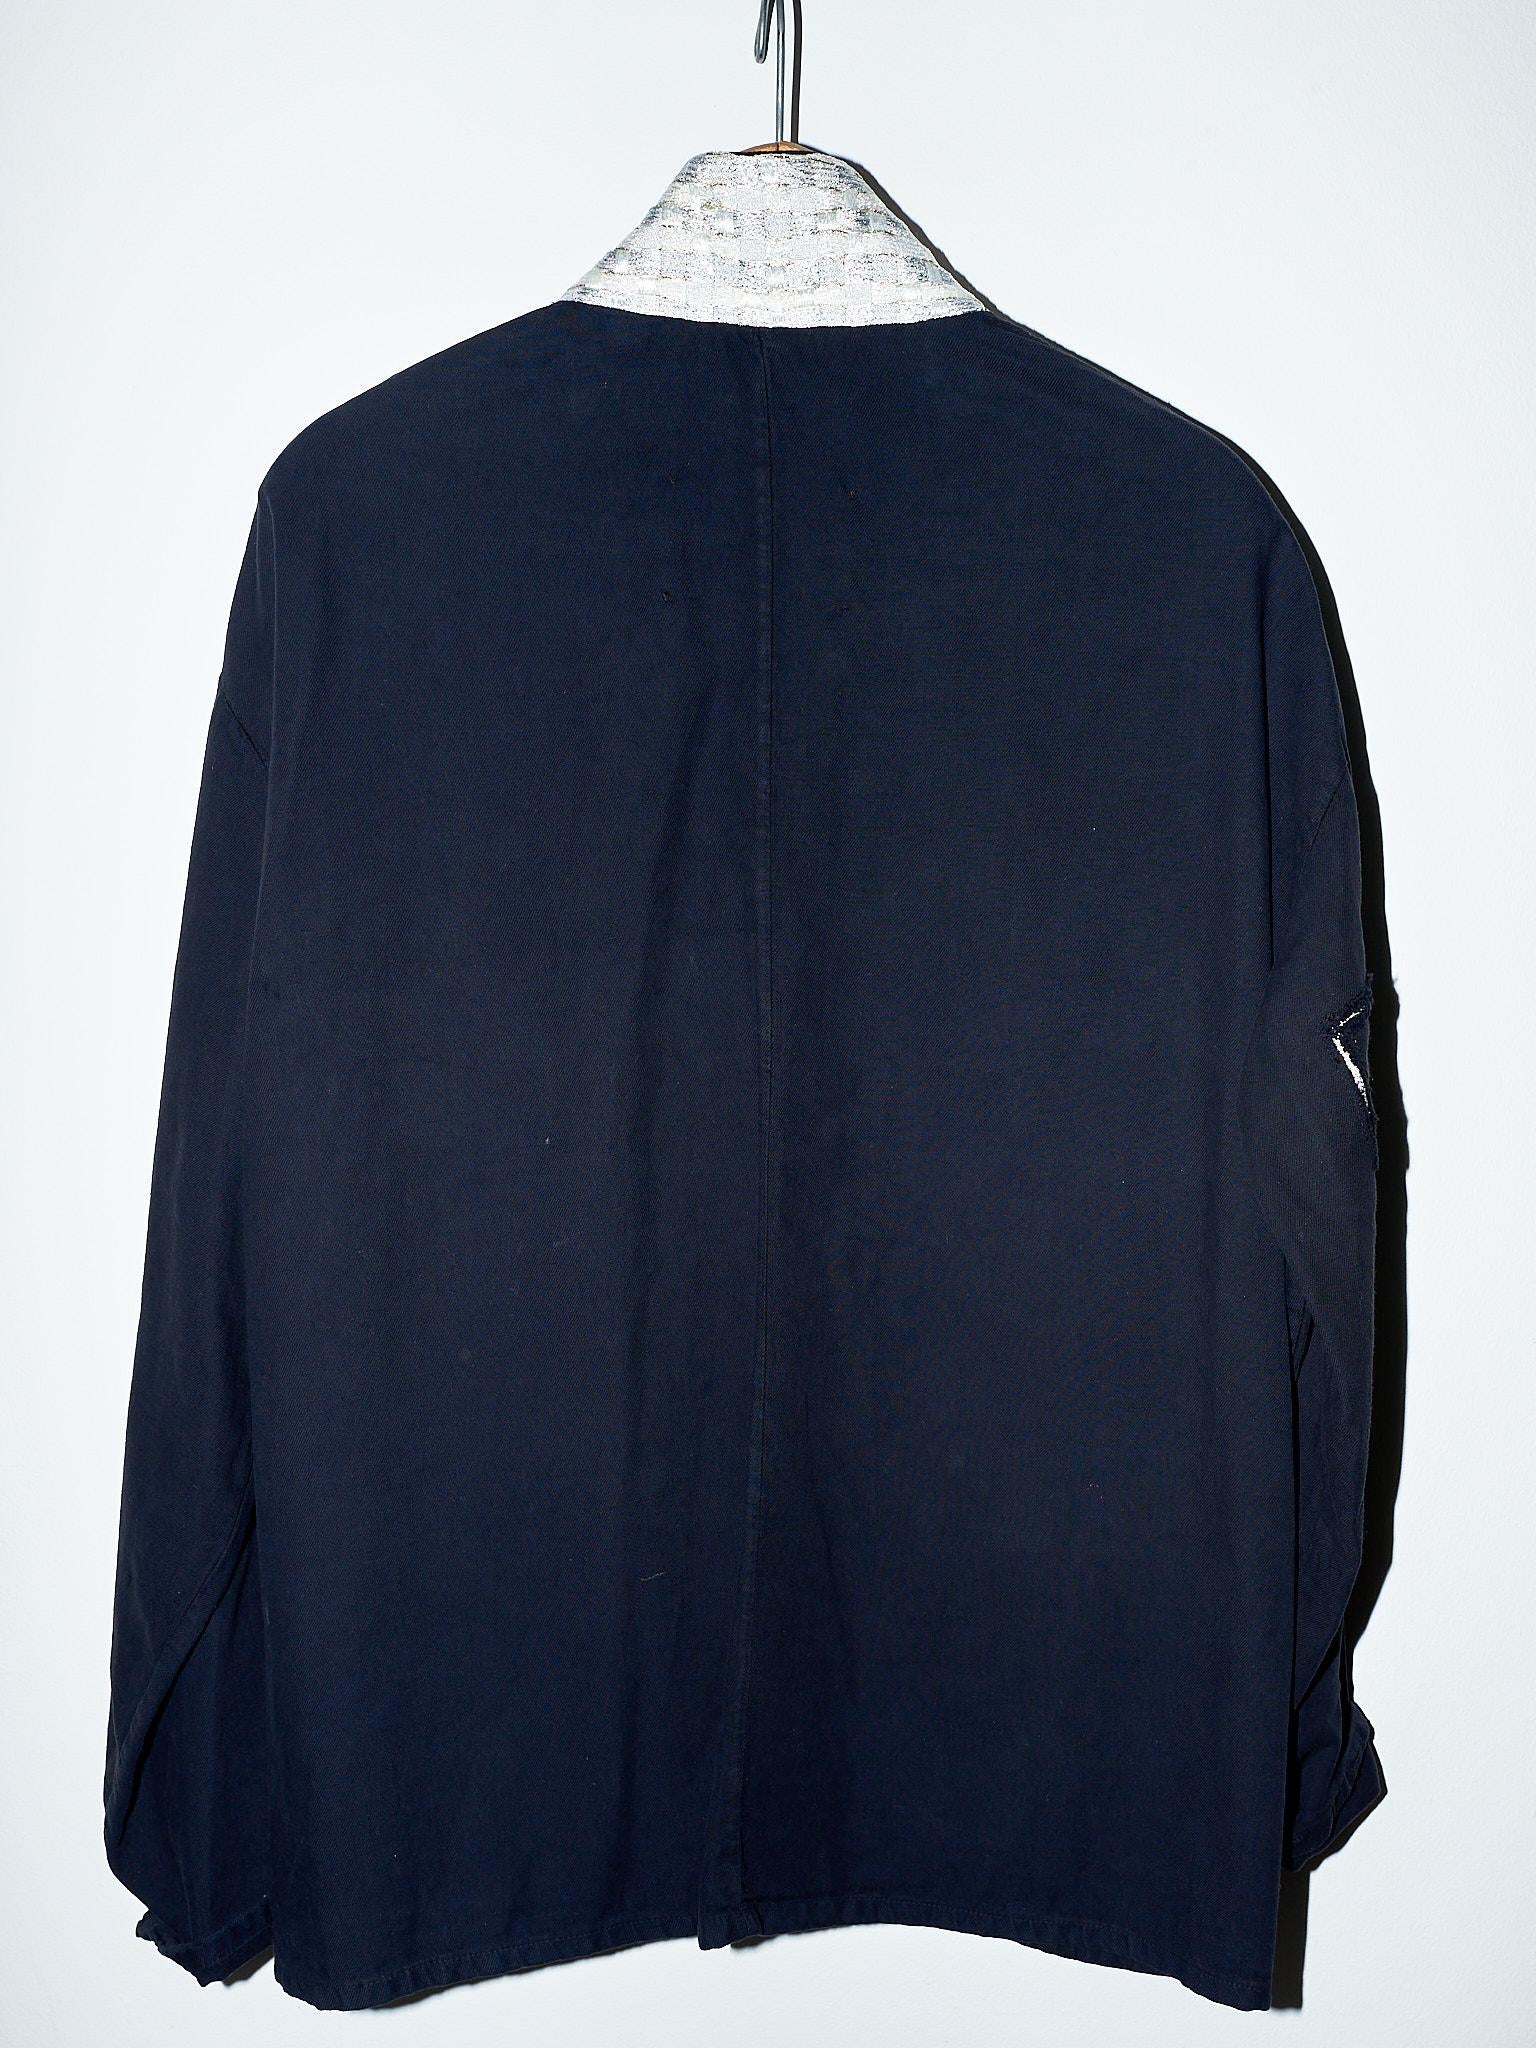 Black Jacket Lurex Tweed Pockets Large Cotton J Dauphin 2